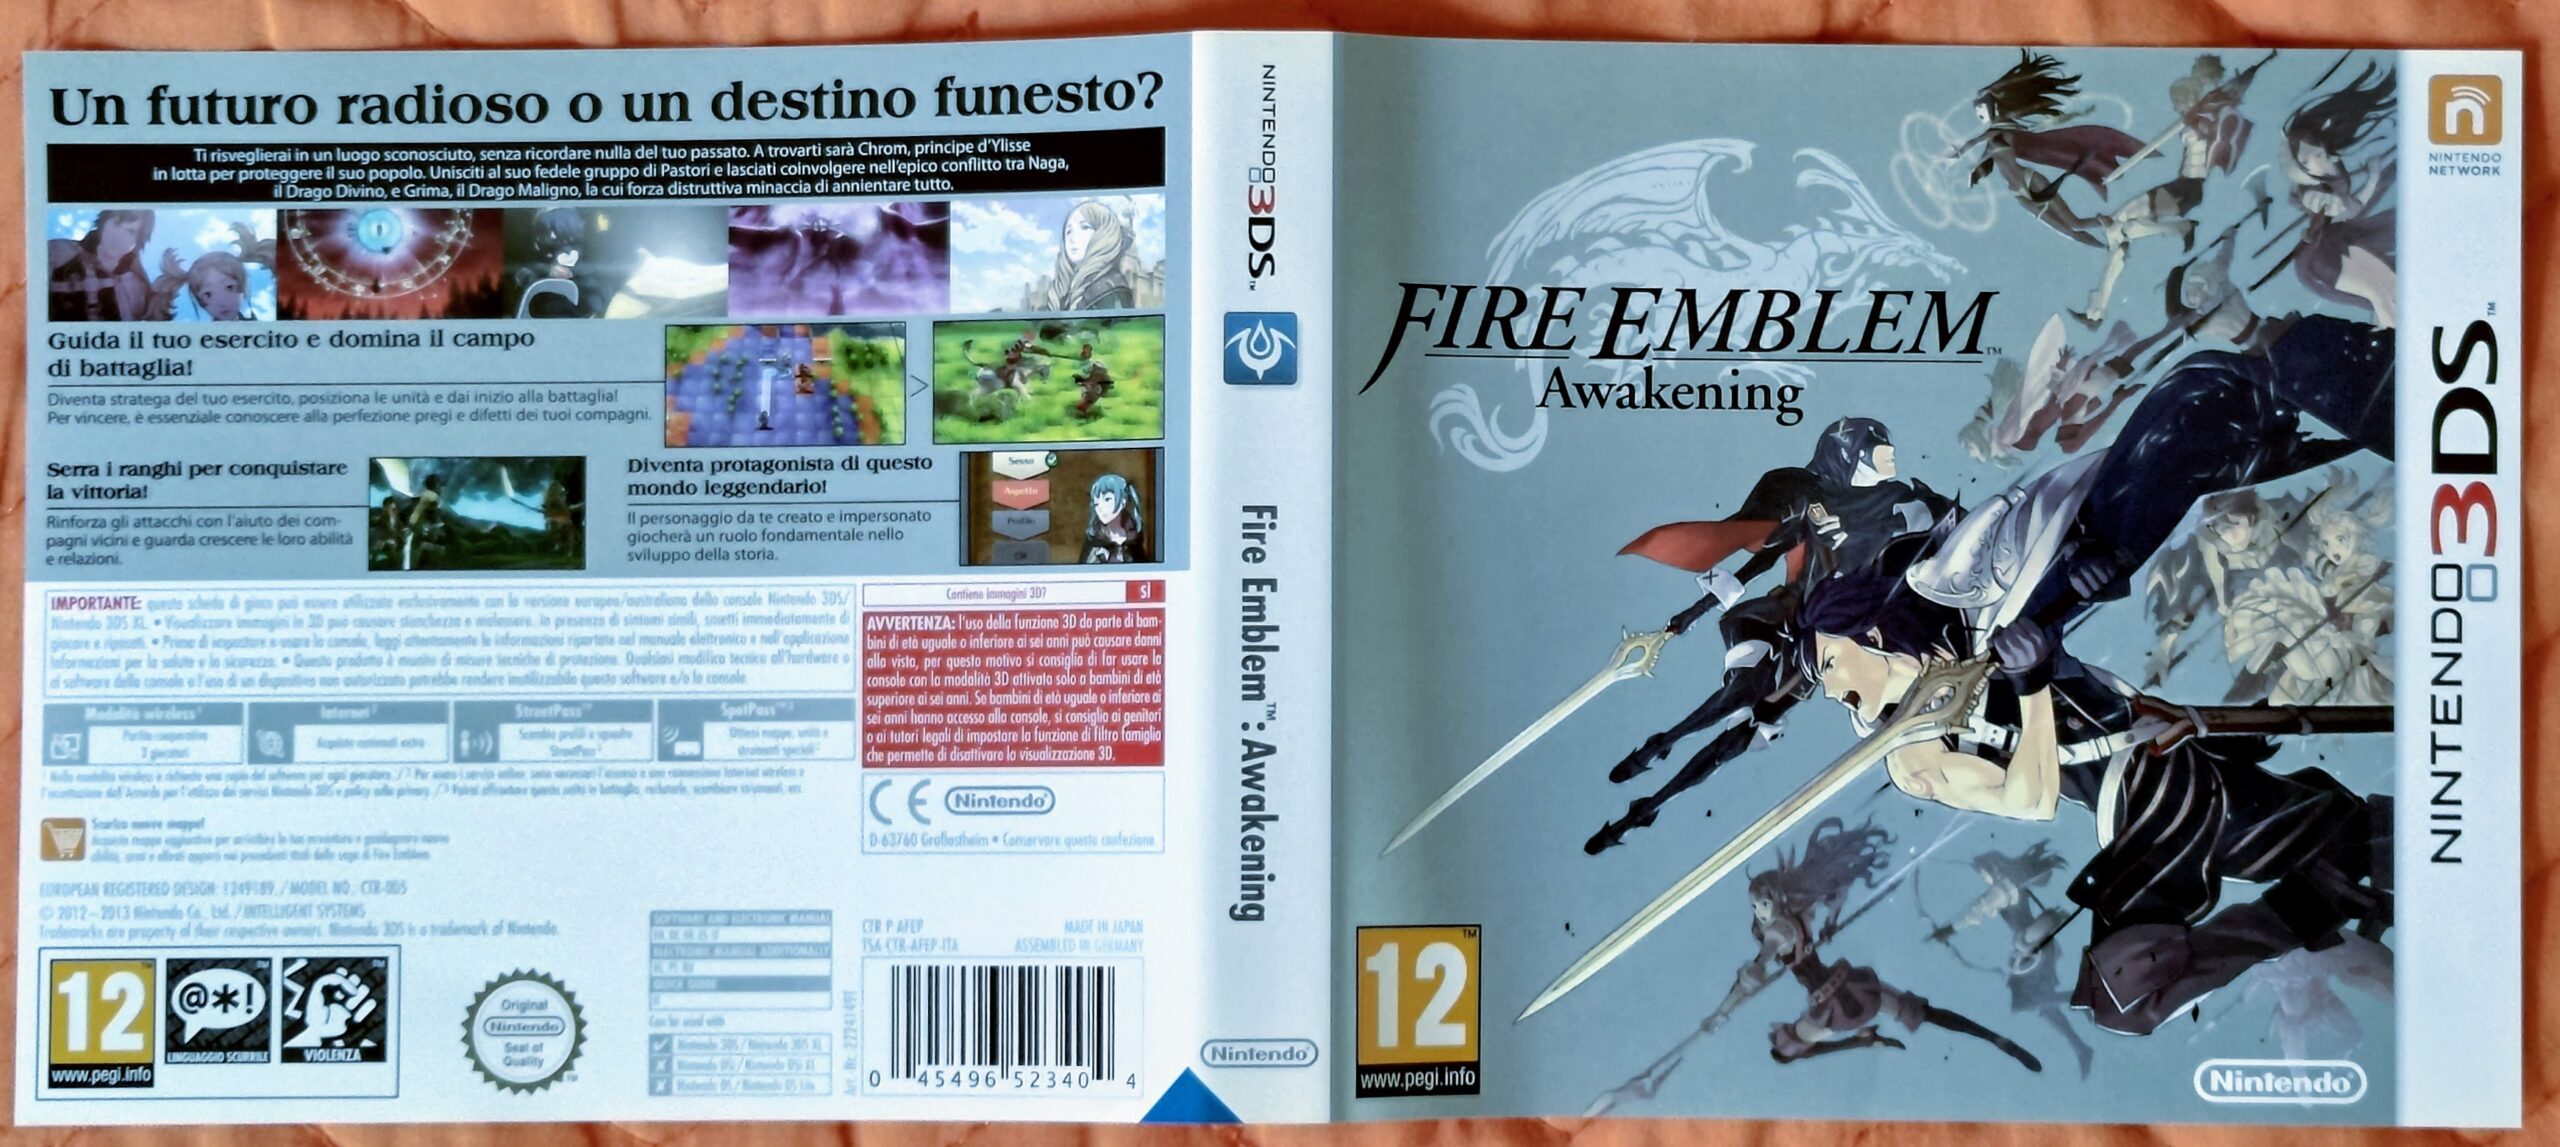 Fire Emblem: Awakening, full cover